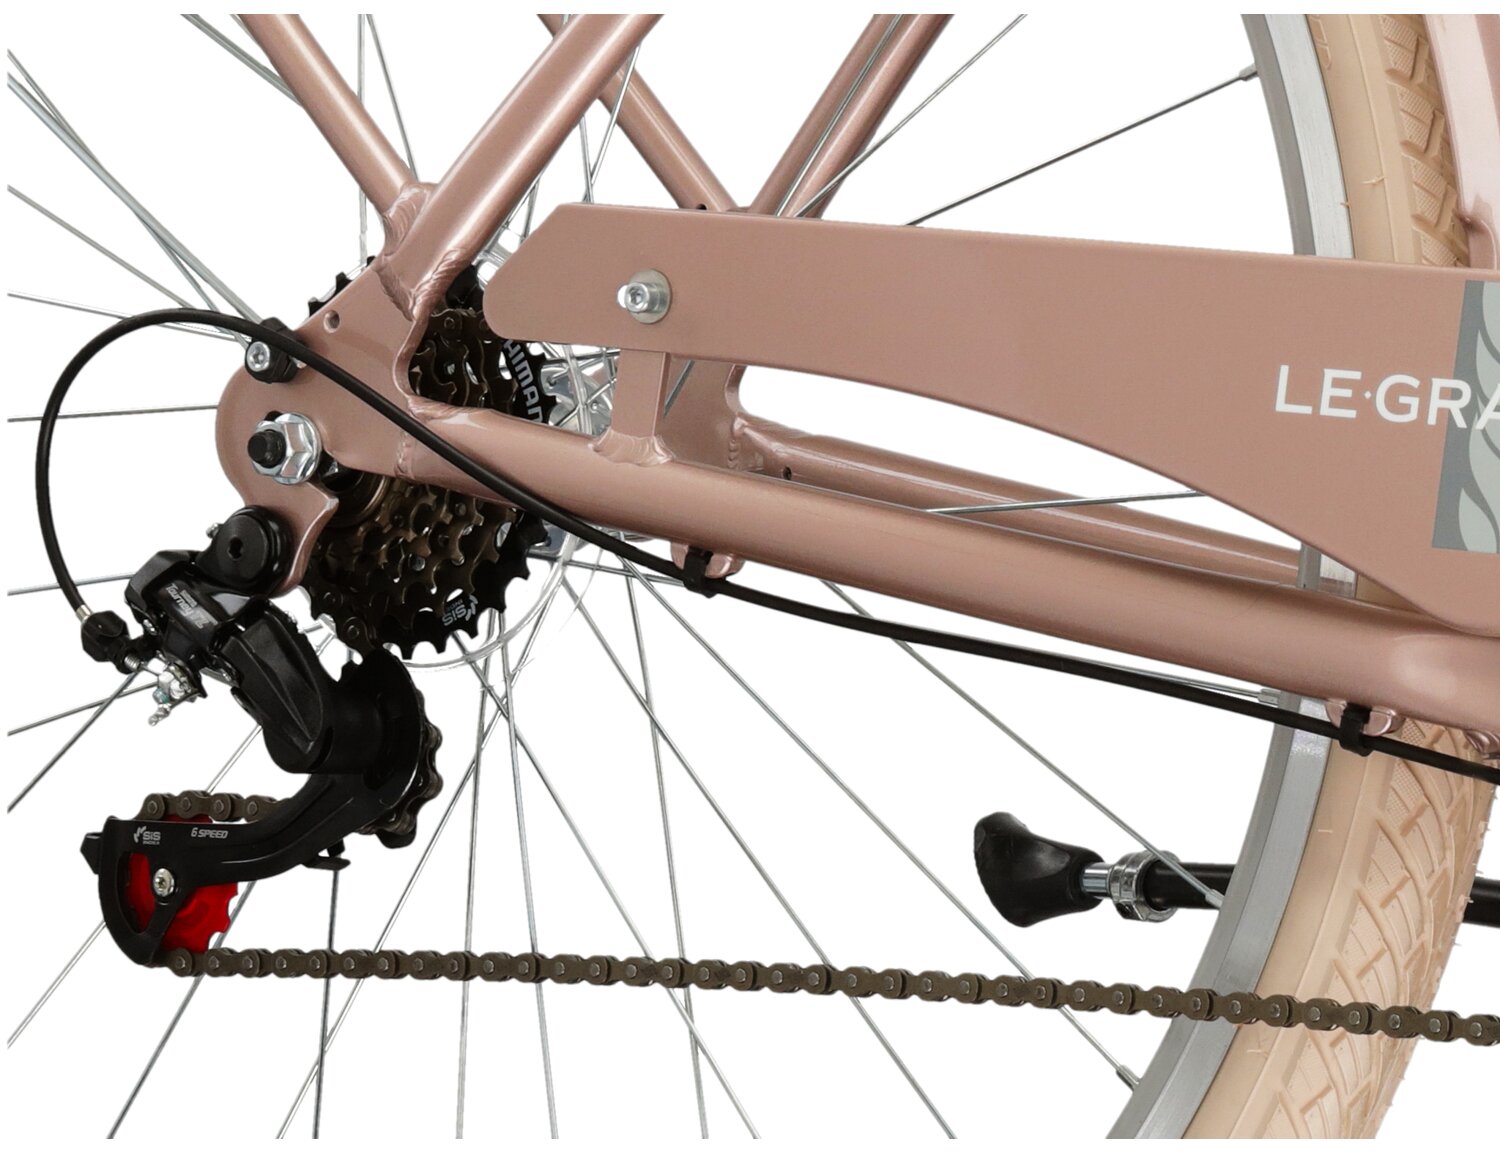  Tylna sześciobiegowa przerzutka Shimano Tourney TZ500 oraz hamulce v-brake w rowerze miejskim Le Grand Lille 2 